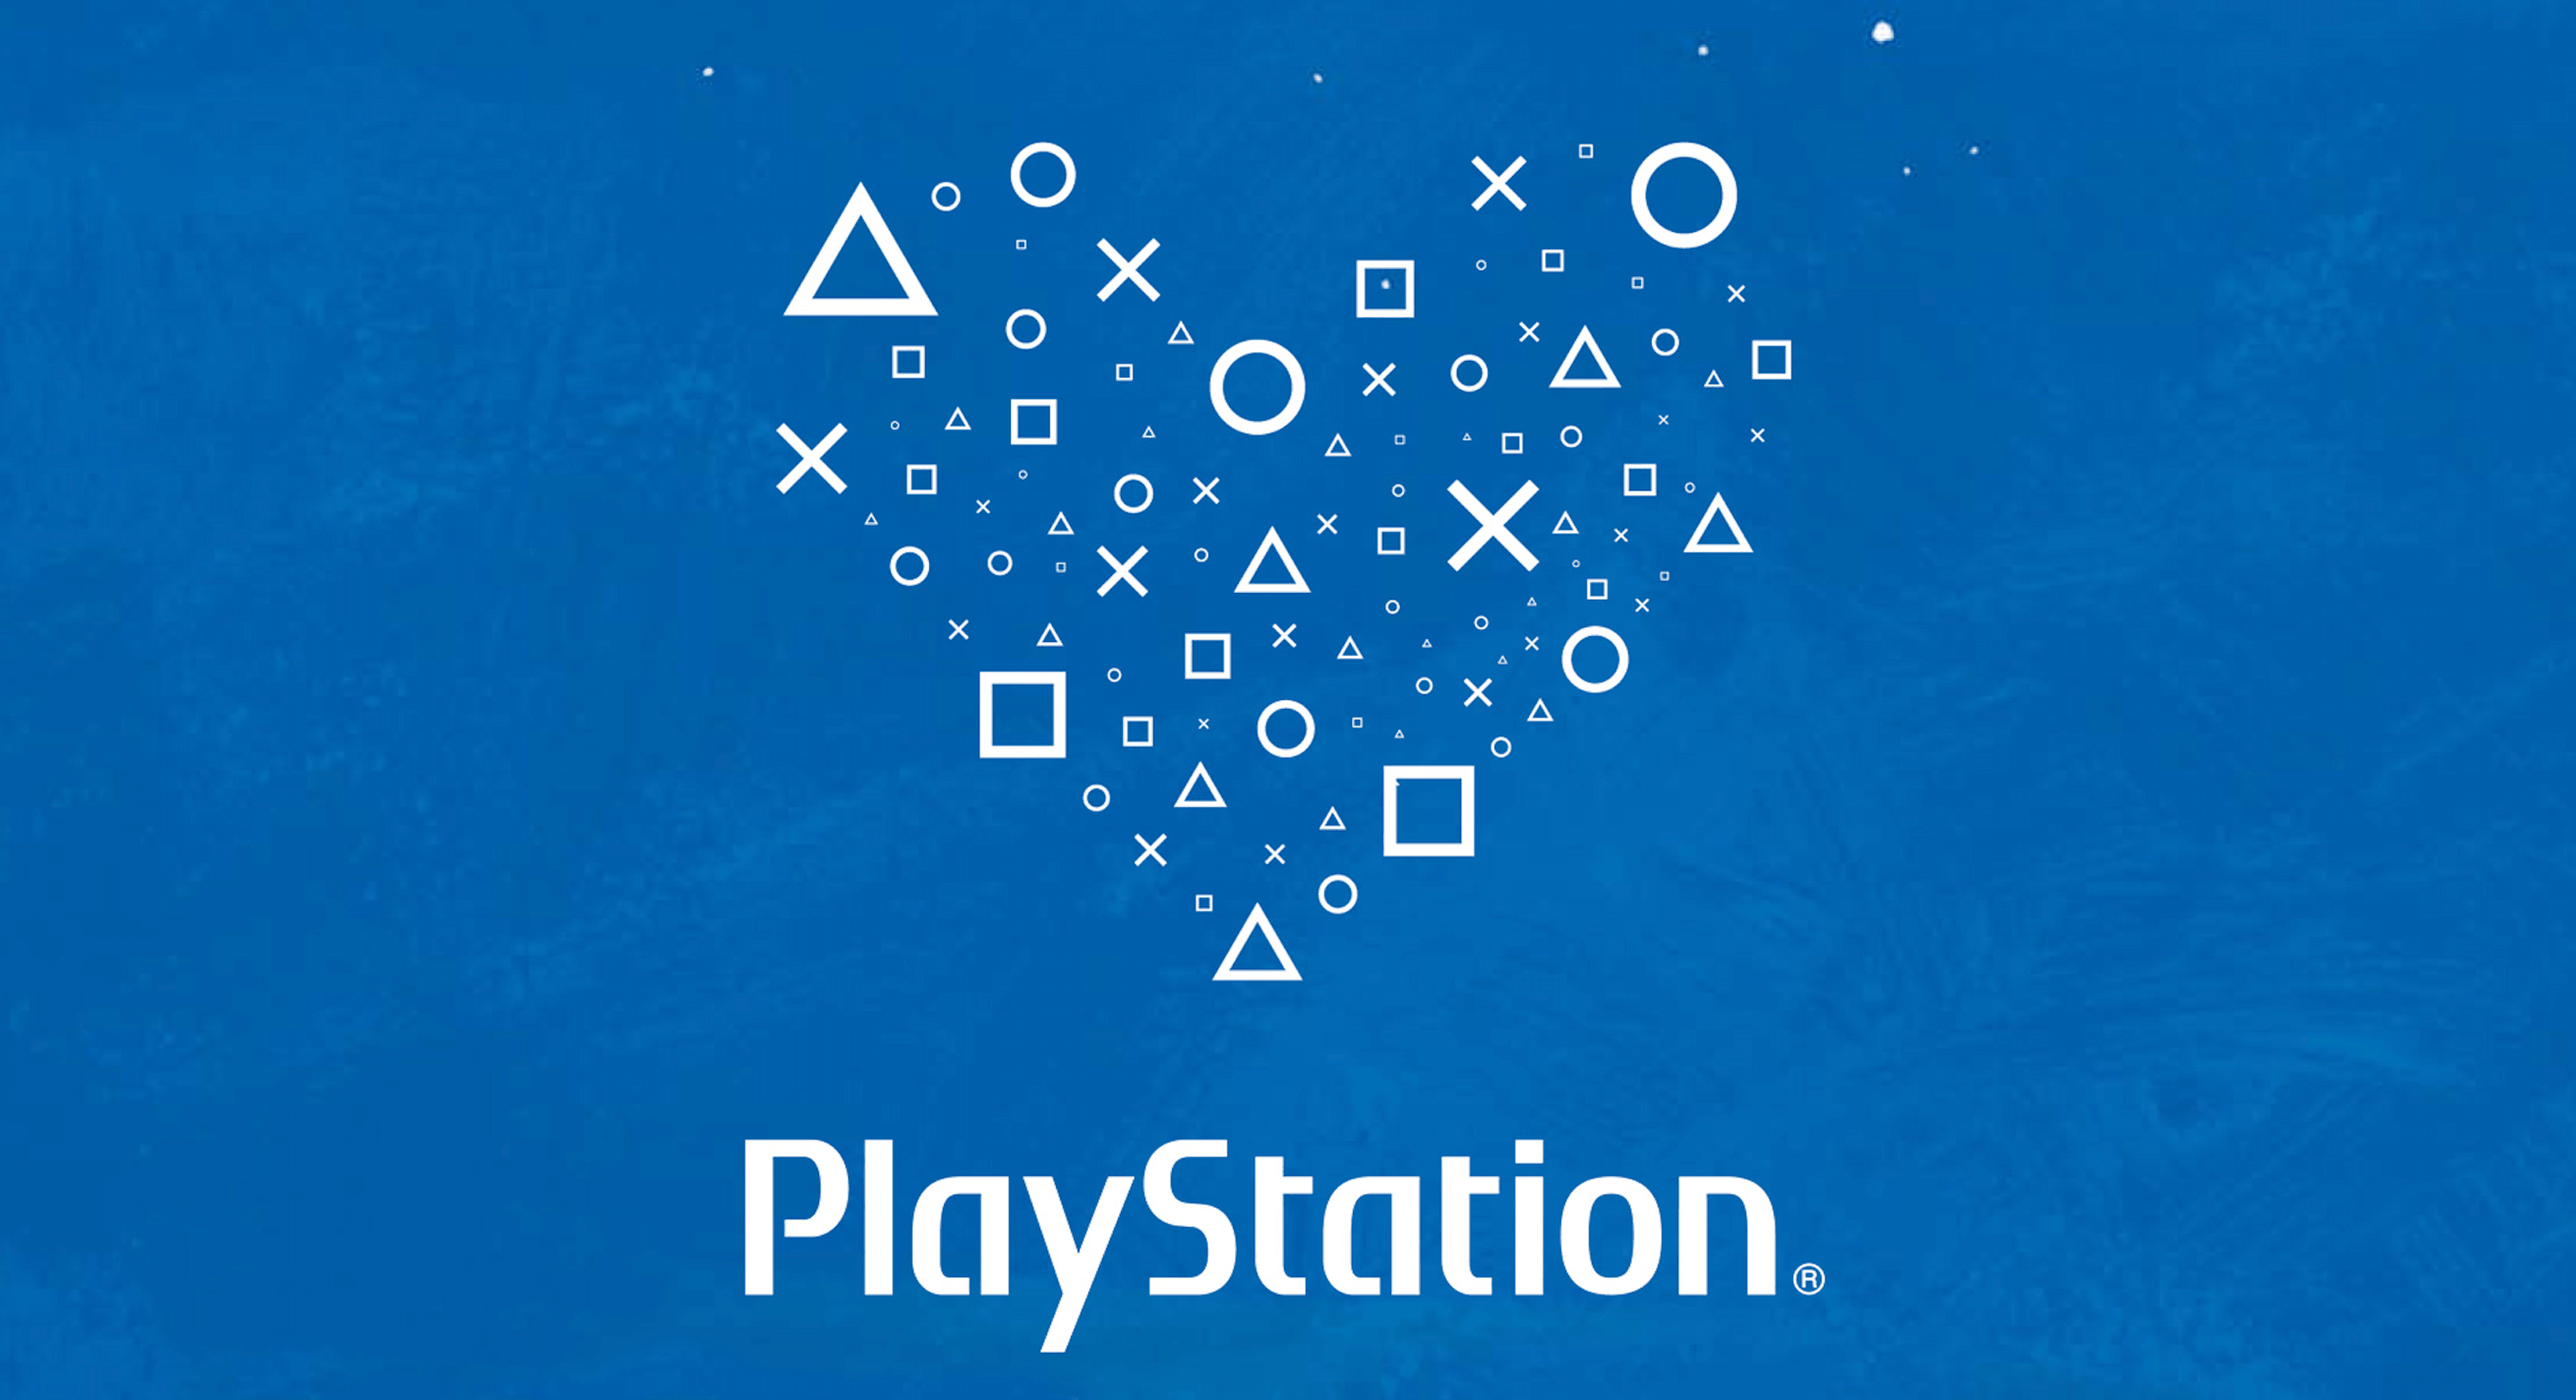 Compromiso PlayStation engloba todas las iniciativa de Responsabilidad Social Corporativa puestas en marcha por la compañía, con el ambicioso objetivo de mejorar la vida de las personas a través del videojuego. 